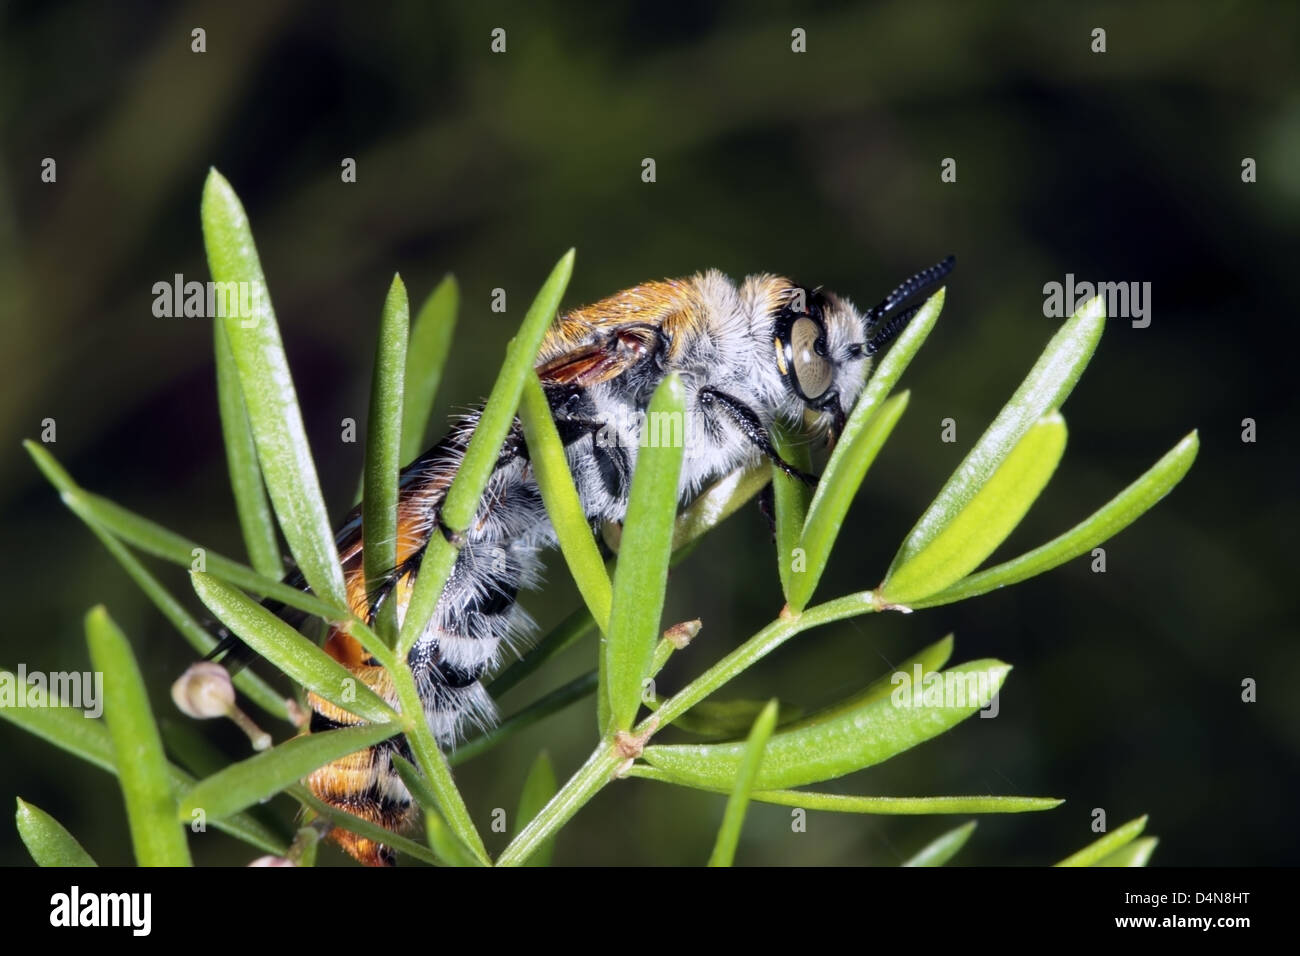 Grandi, circa 30mm, giallo fiore peloso Wasp ali di asciugatura il fogliame di Asparagus- Campsomeris tasmaniensis - Fmily Scoliidae Foto Stock